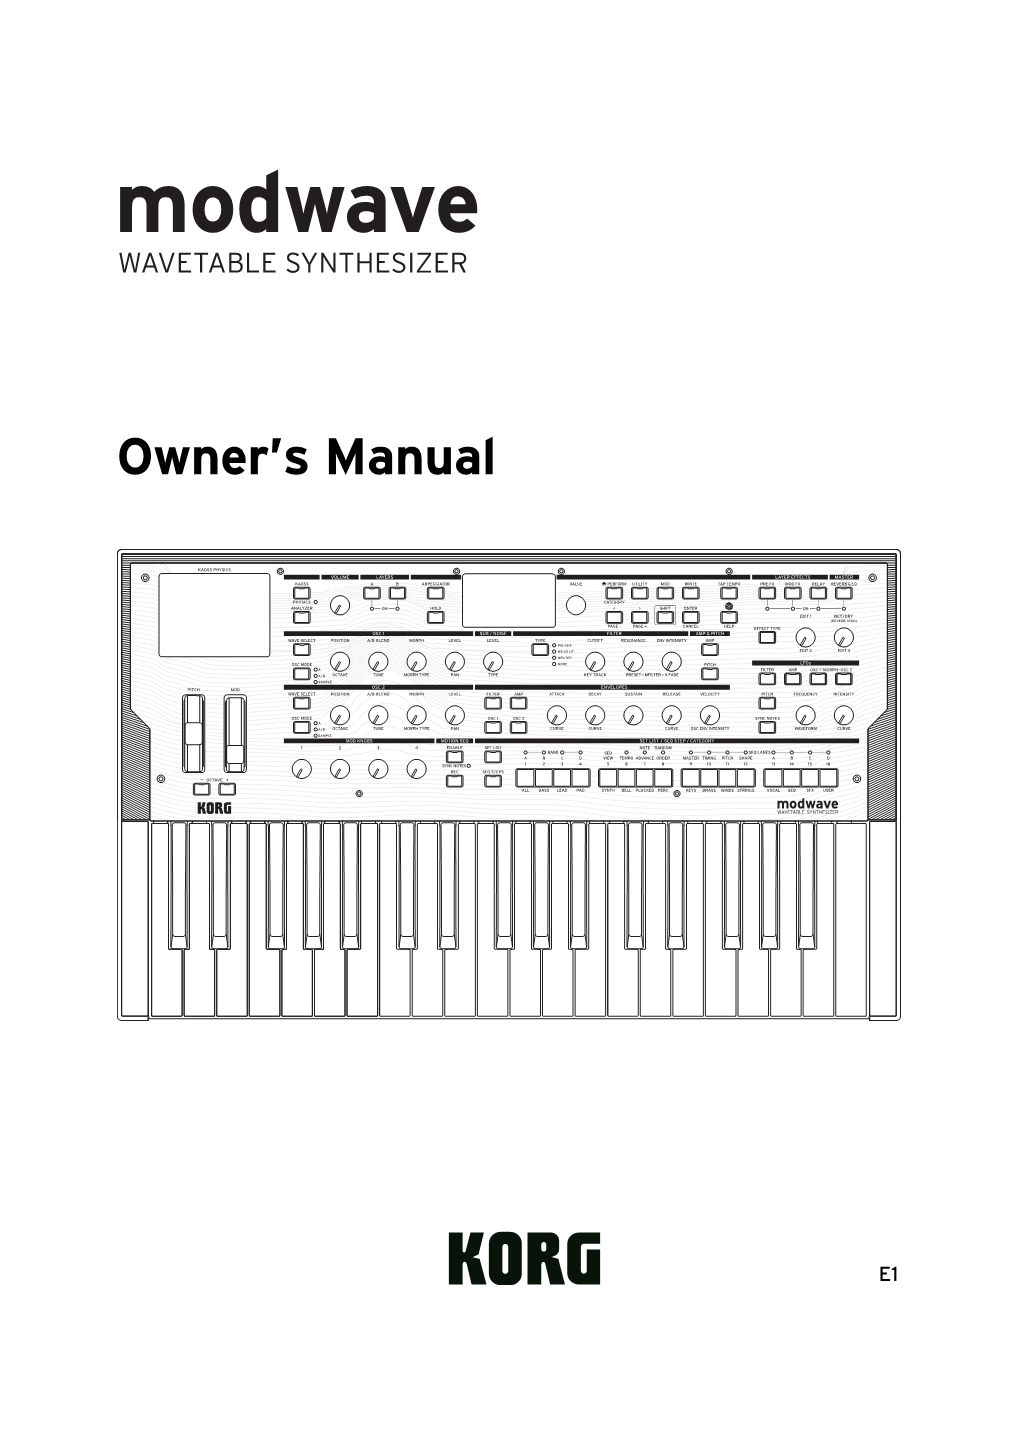 Modwave Owner's Manual